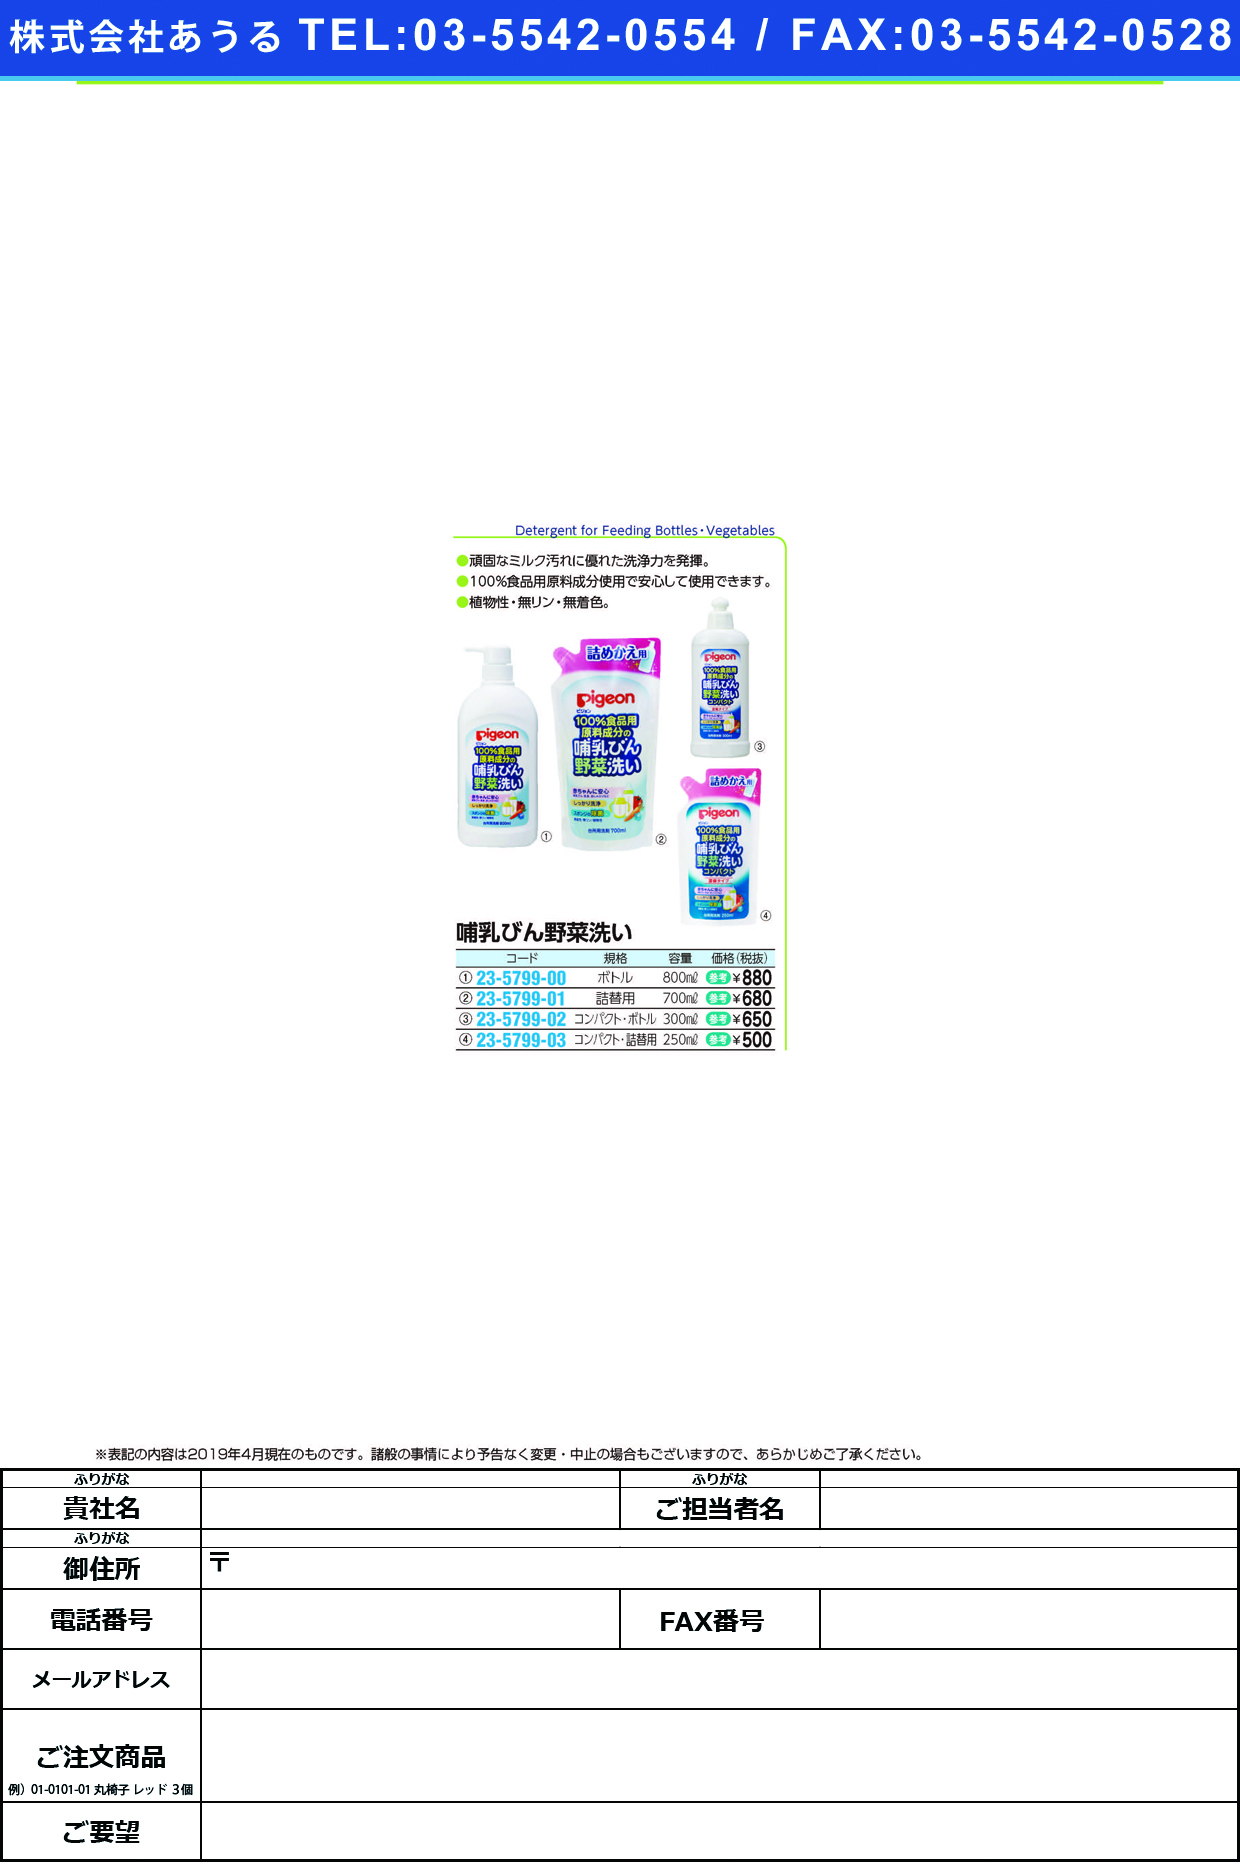 哺乳びん野菜洗いコンパクト 12113(300ML) ﾎﾆｭｳﾋﾞﾝﾔｻｲｱﾗｲｺﾝﾊﾟｸﾄ(ピジョン)